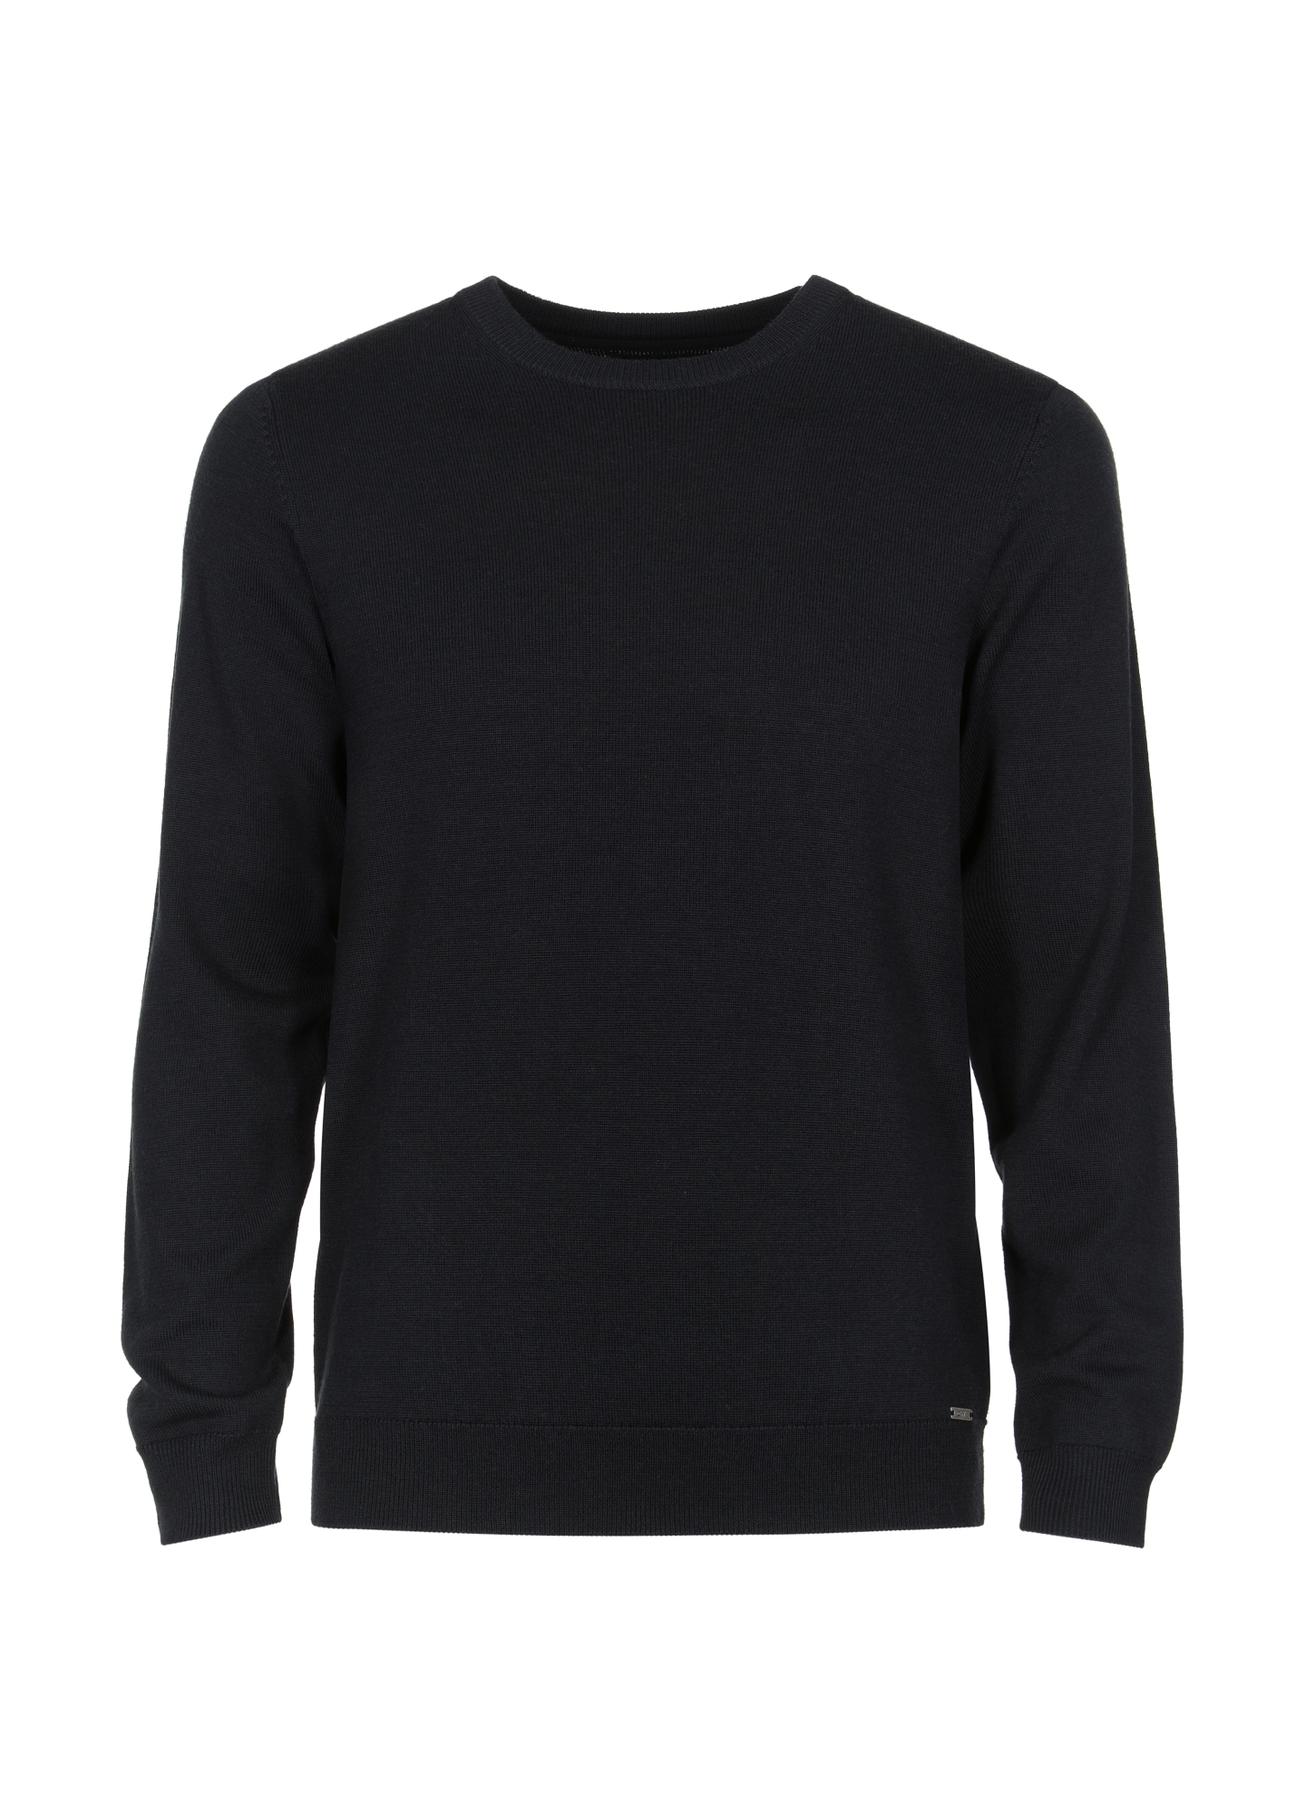 Czarny wełniany sweter męski SWEMT-0139-99(Z23)